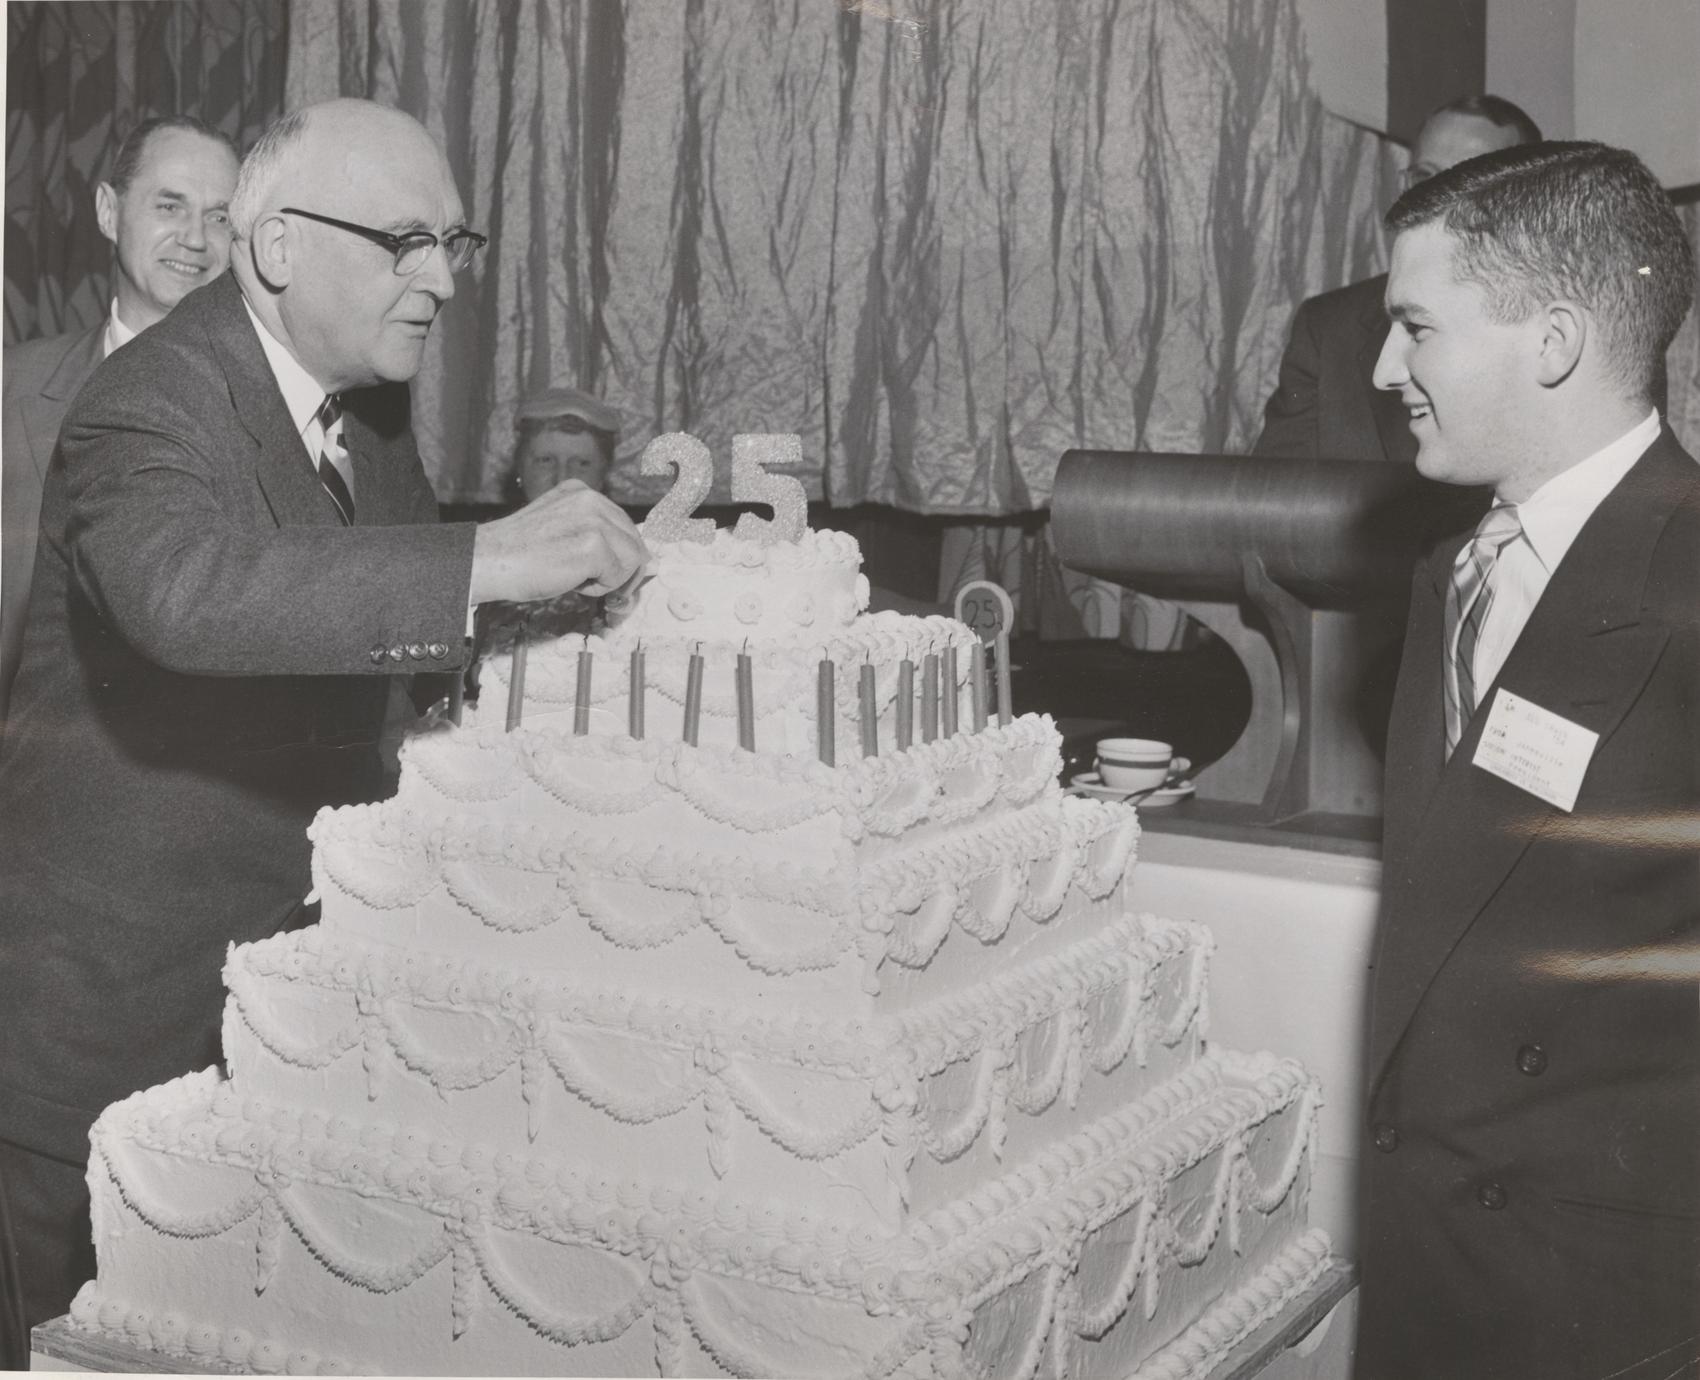 25th Anniversary Cake Uwdc Uw Madison Libraries